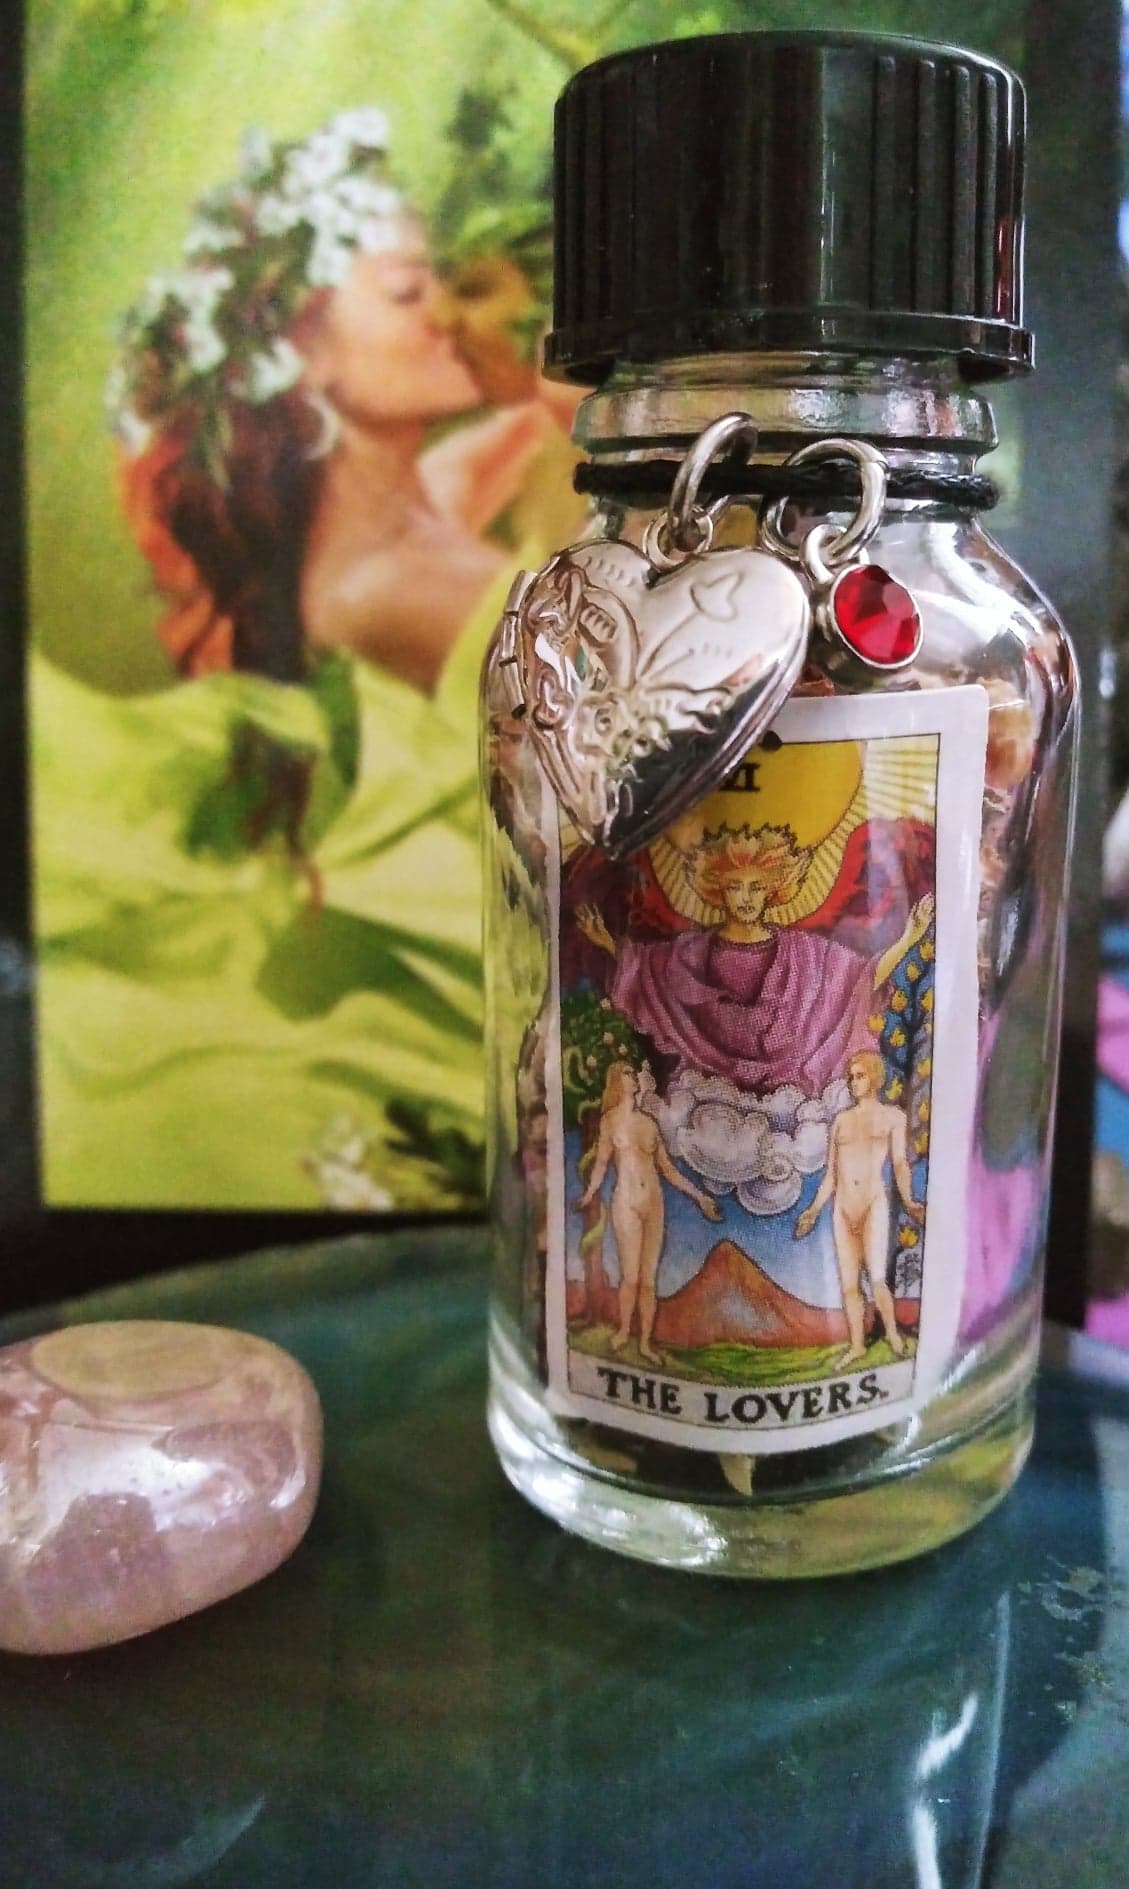 The Lovers Tarot Mini spell Jar